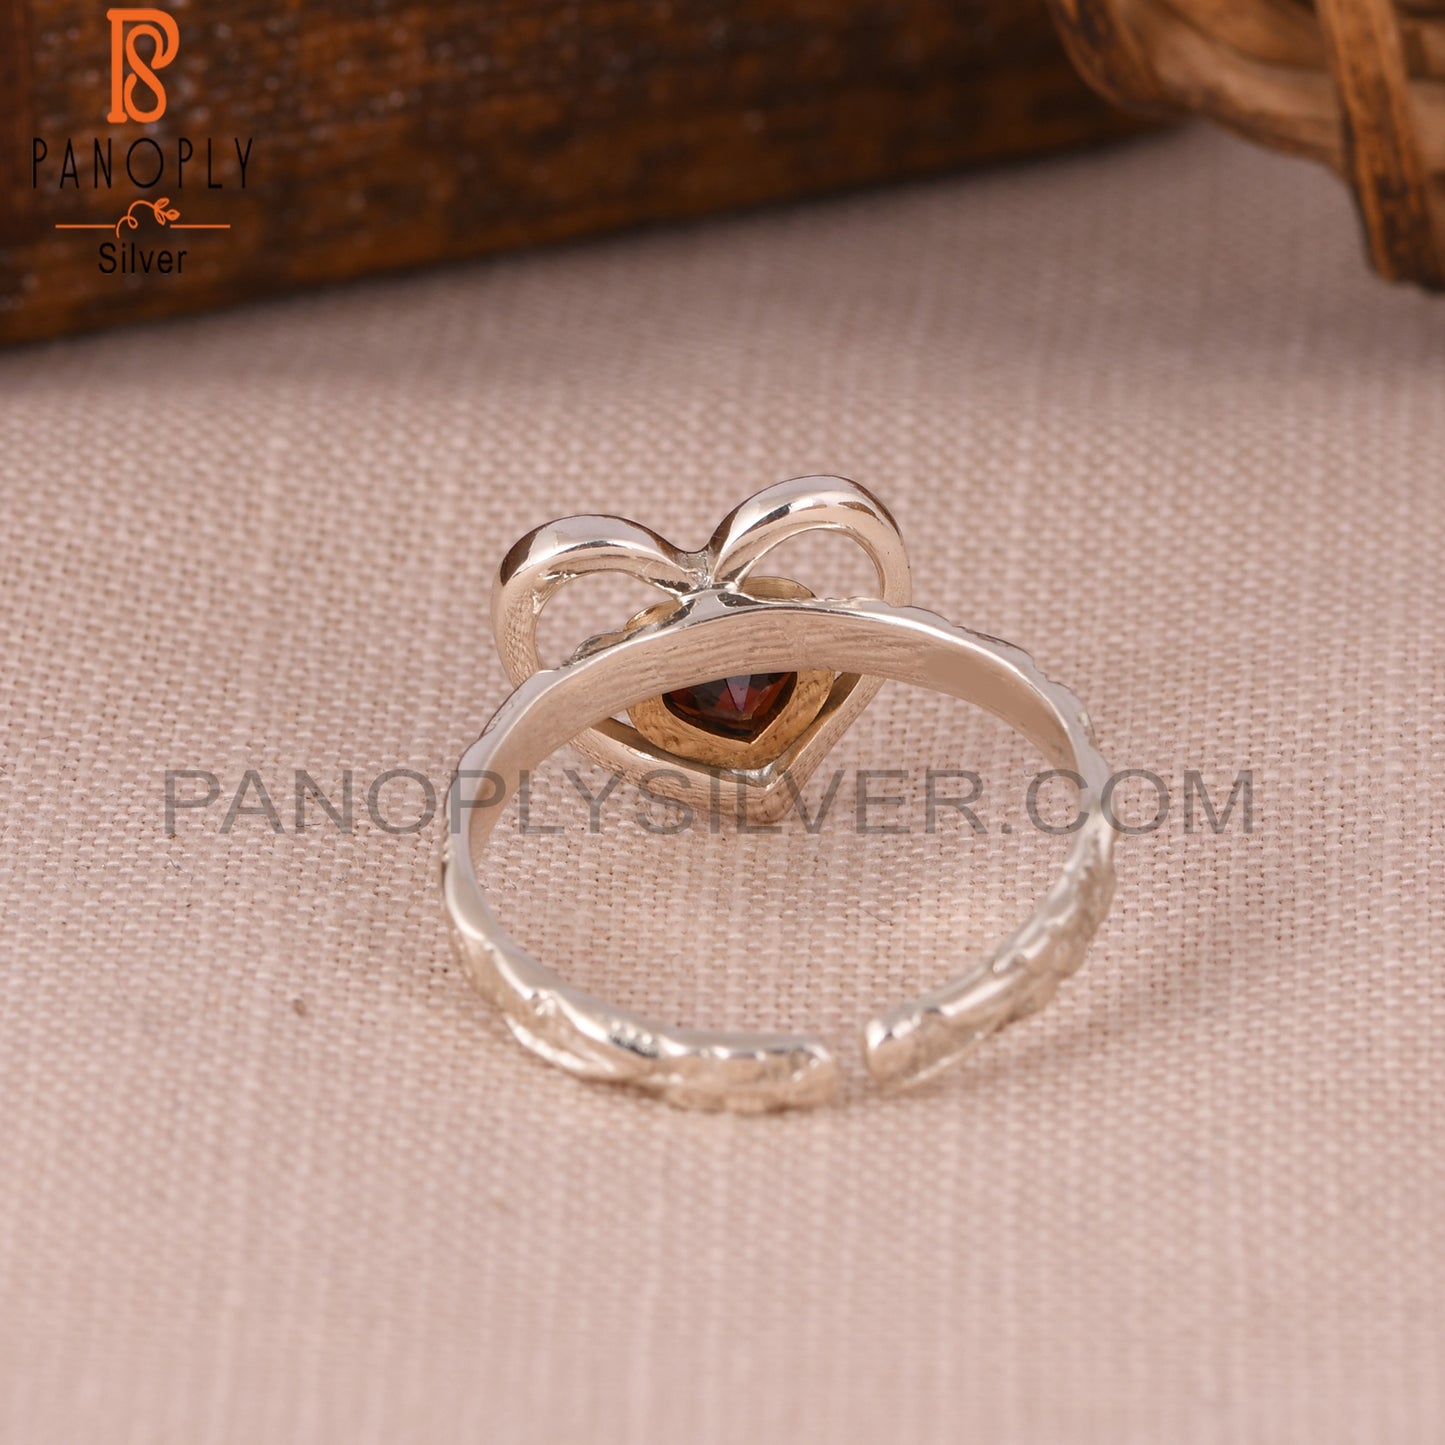 Garnet Double Heart Shape 925 Sterling Silver Ring